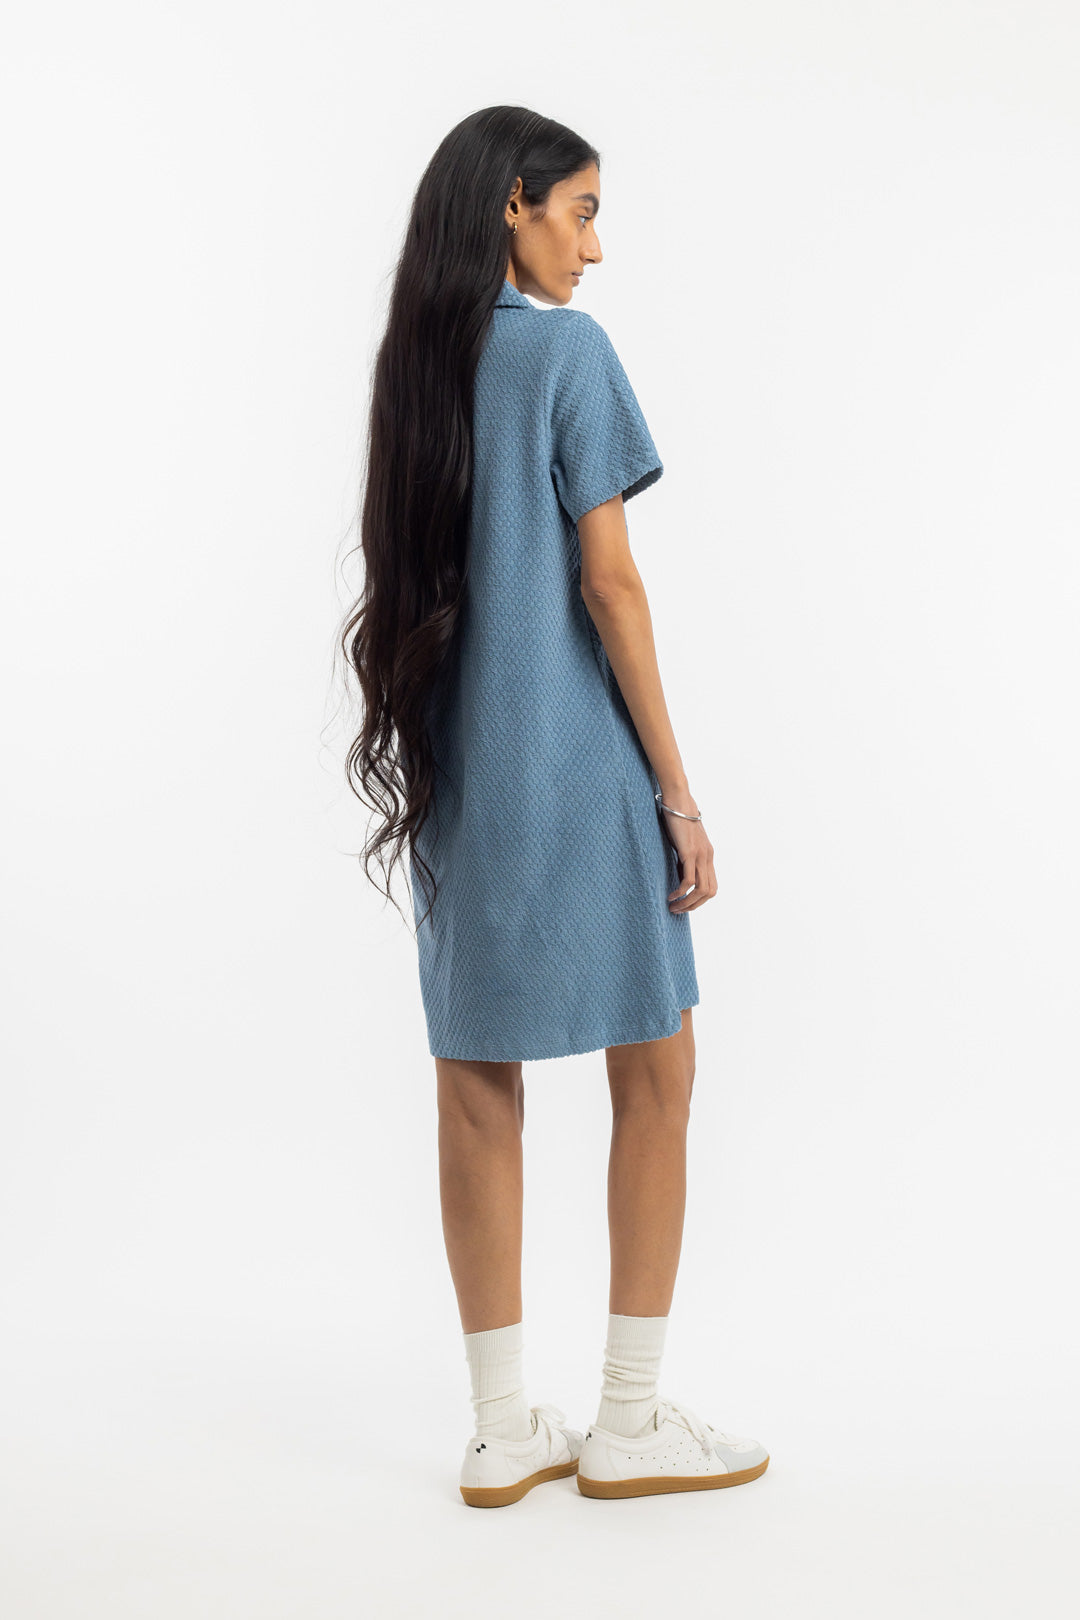 Hellblaues Kleid aus 100% Bio-Baumwolle von Rotholz